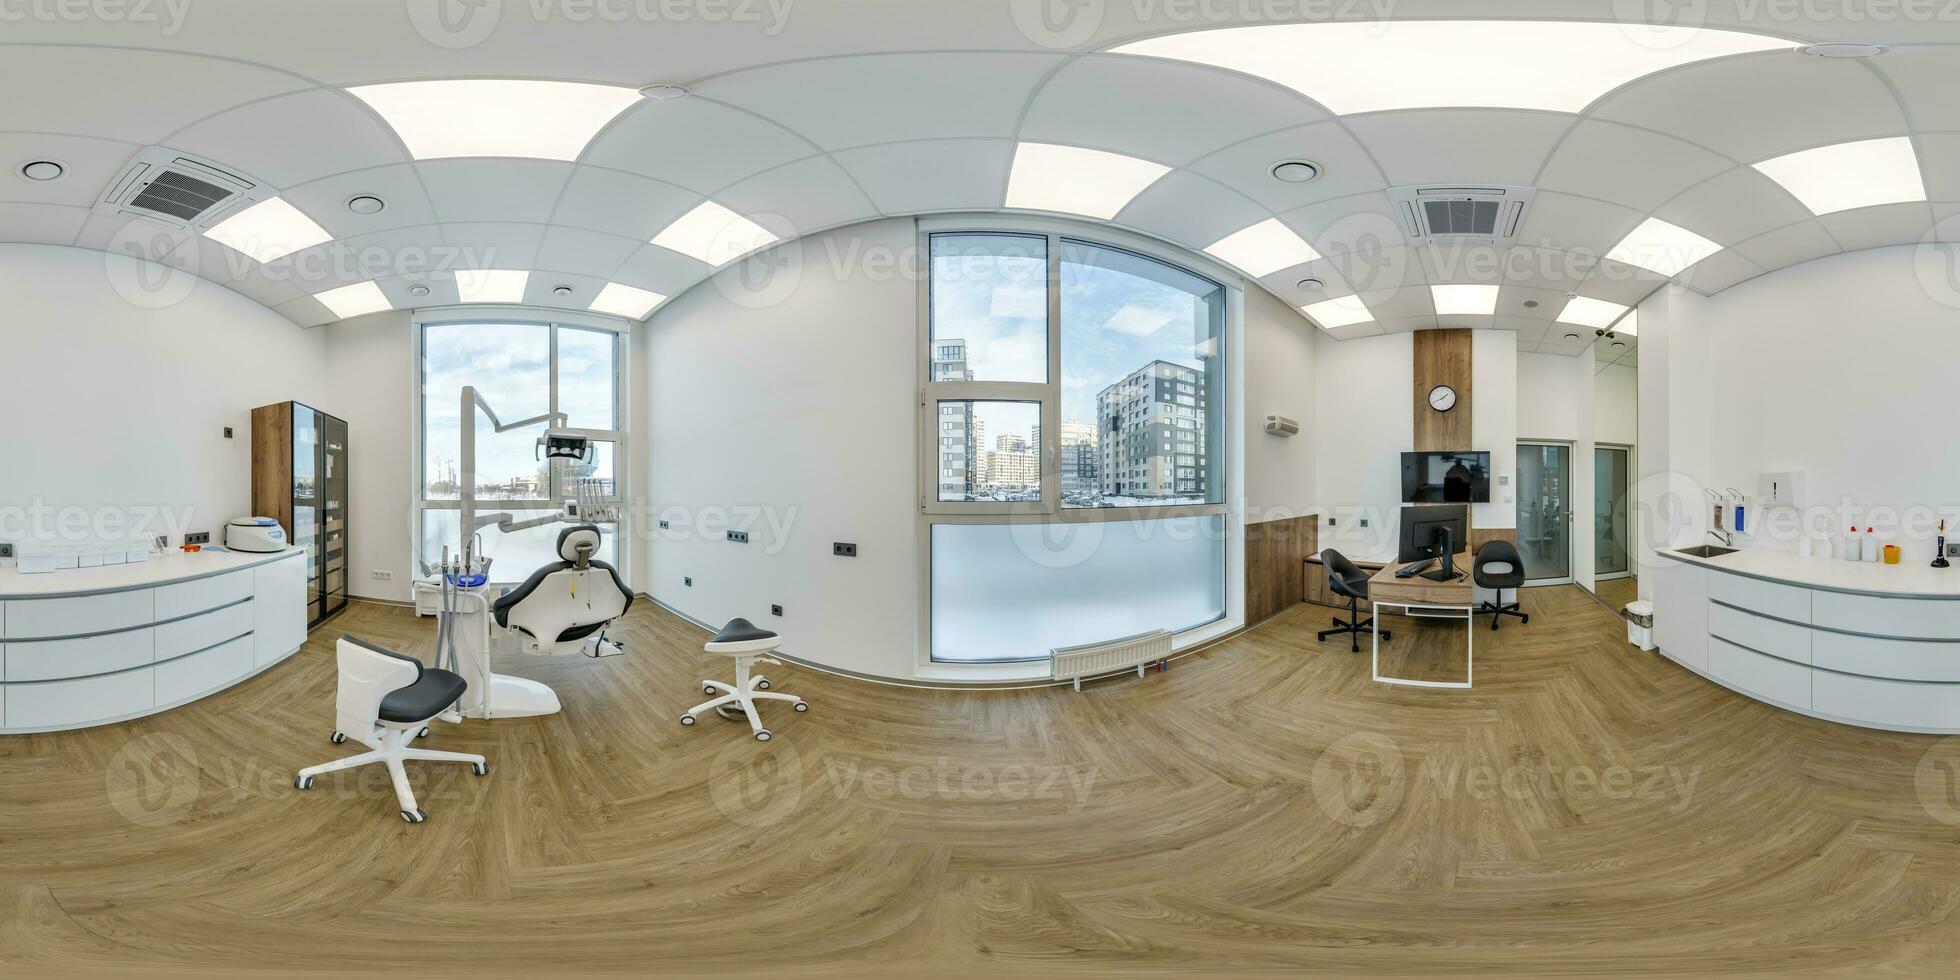 full hdri 360 panorama i kirurg ortoped terapeut skåp dental klinik med modern Utrustning i kontor i likriktad utsprång, vr innehåll foto